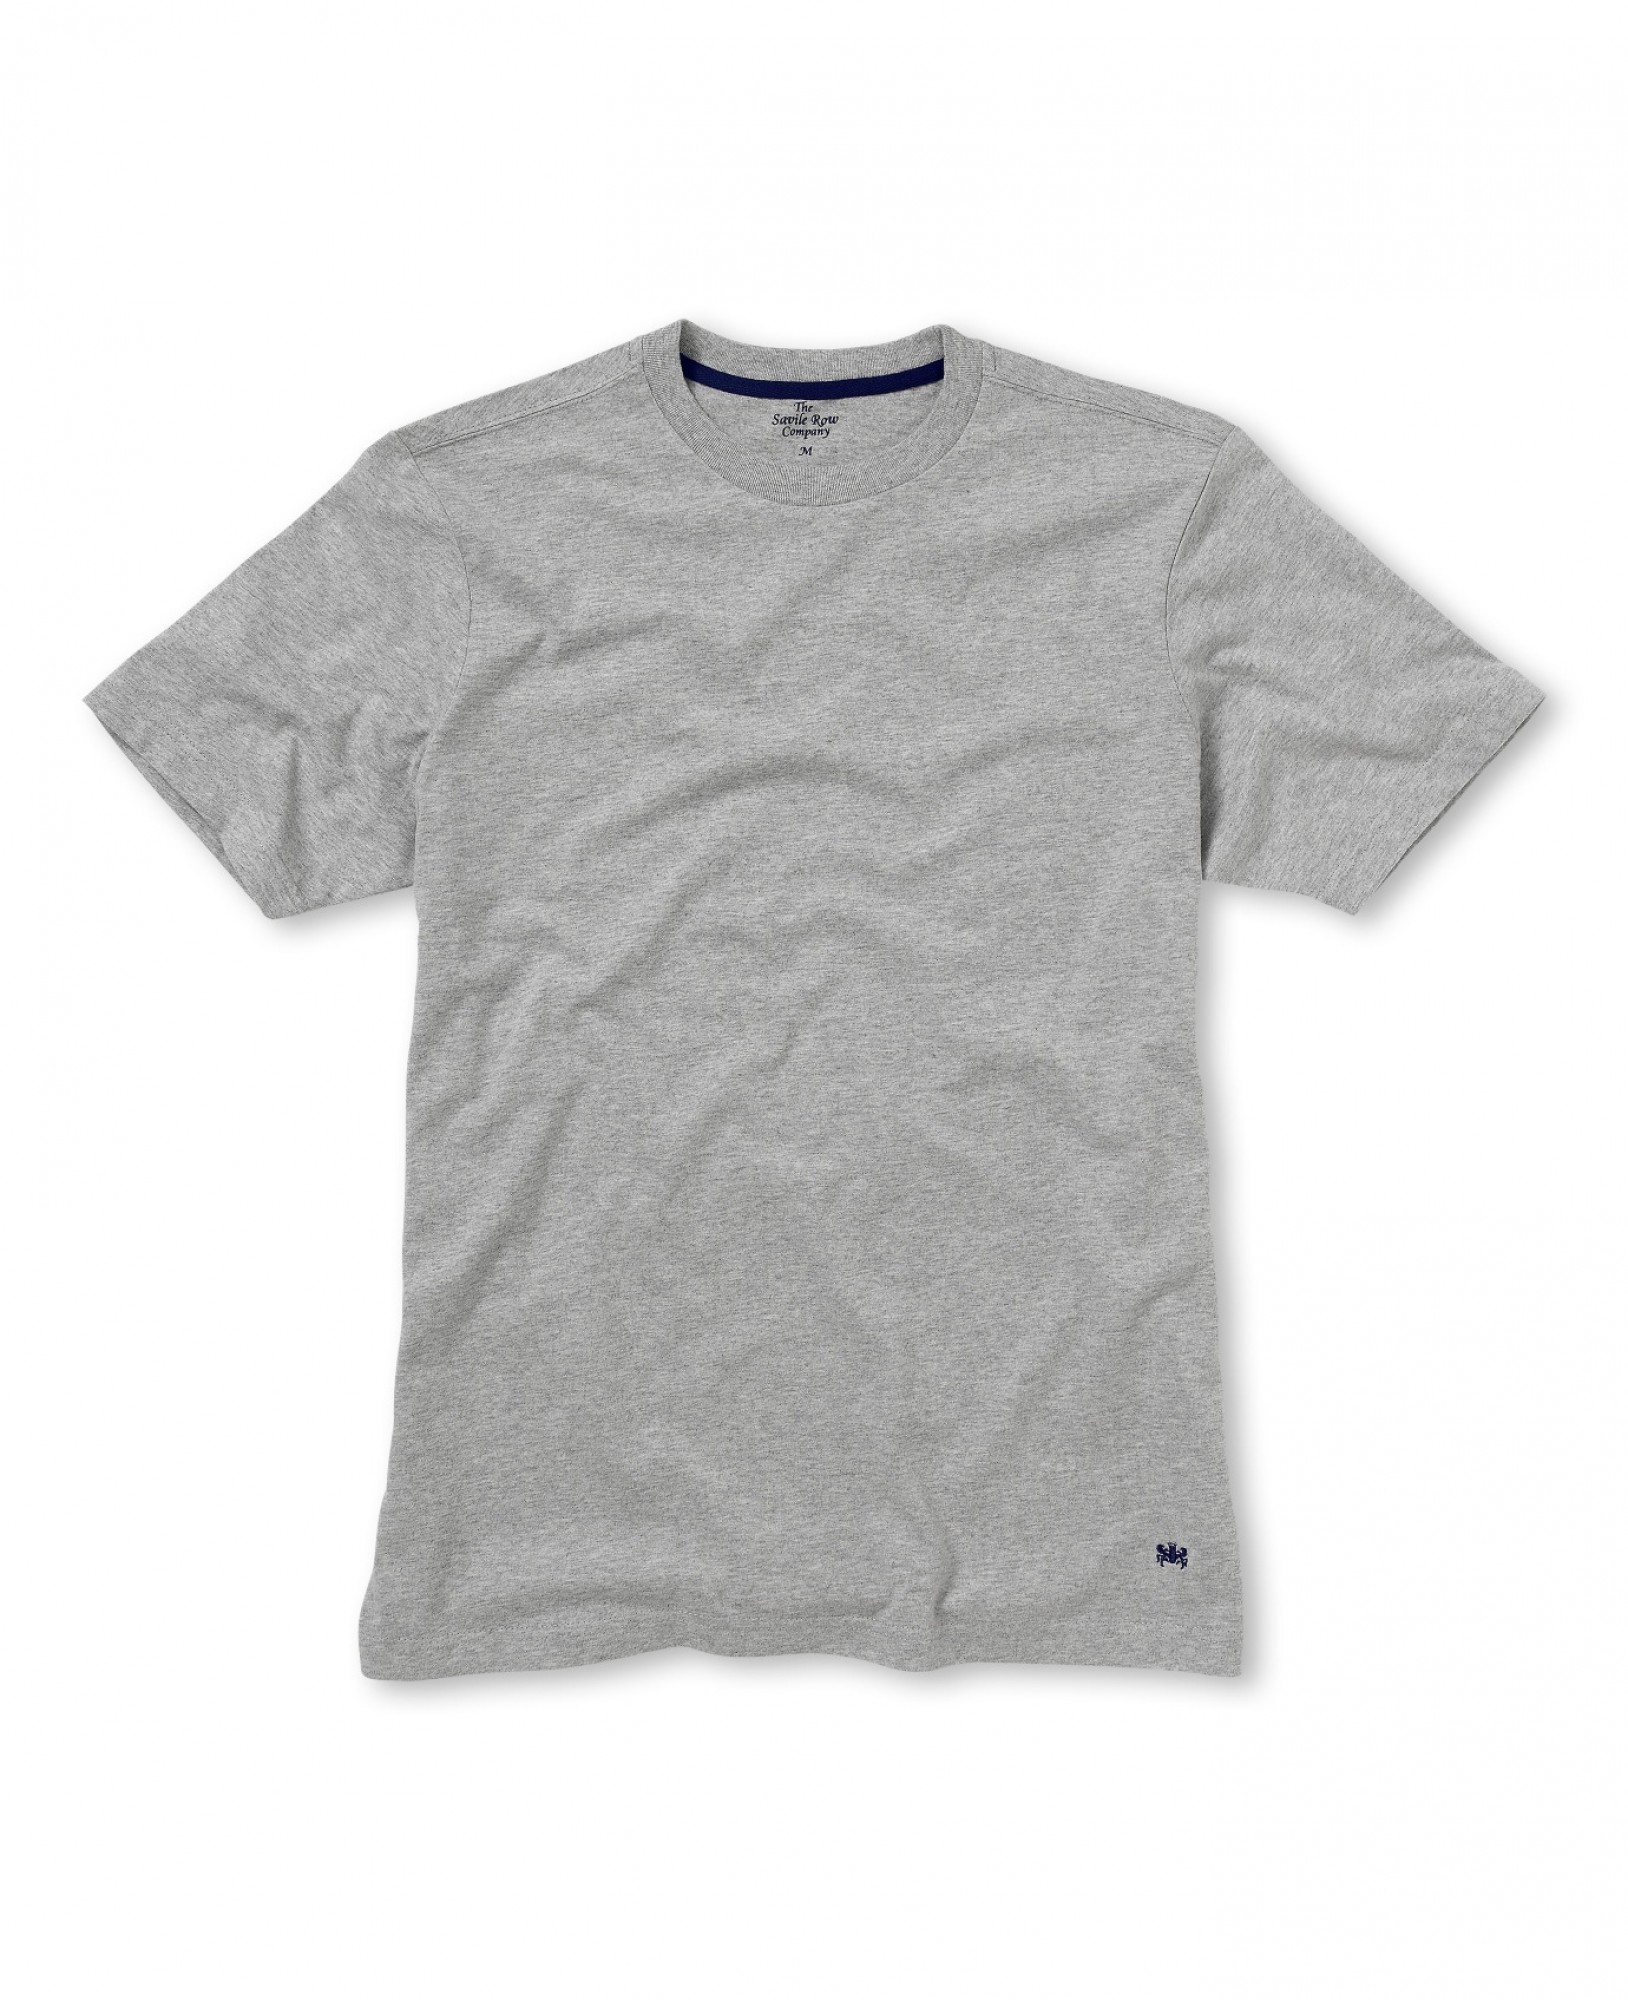 Grey Short Sleeve T-Shirt XXXL